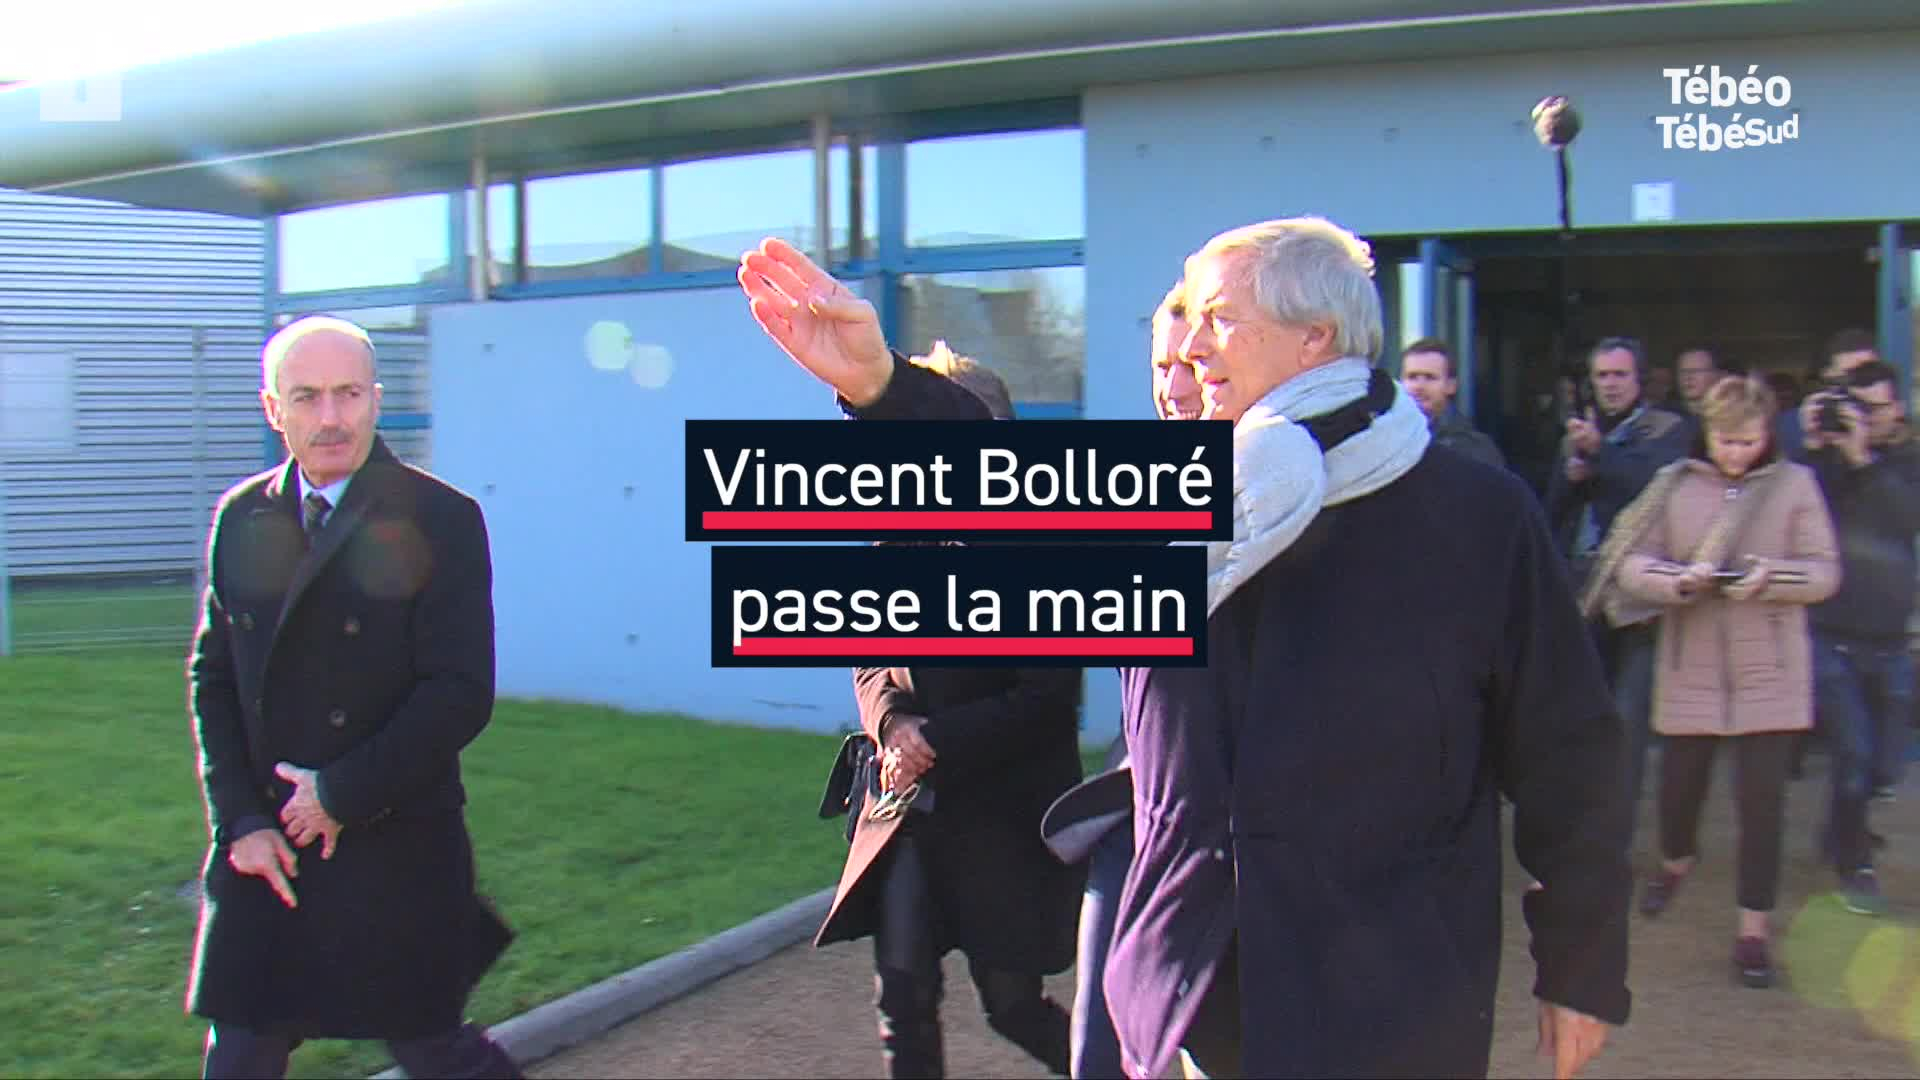 Vincent Bolloré passe la main  (Le Télégramme)